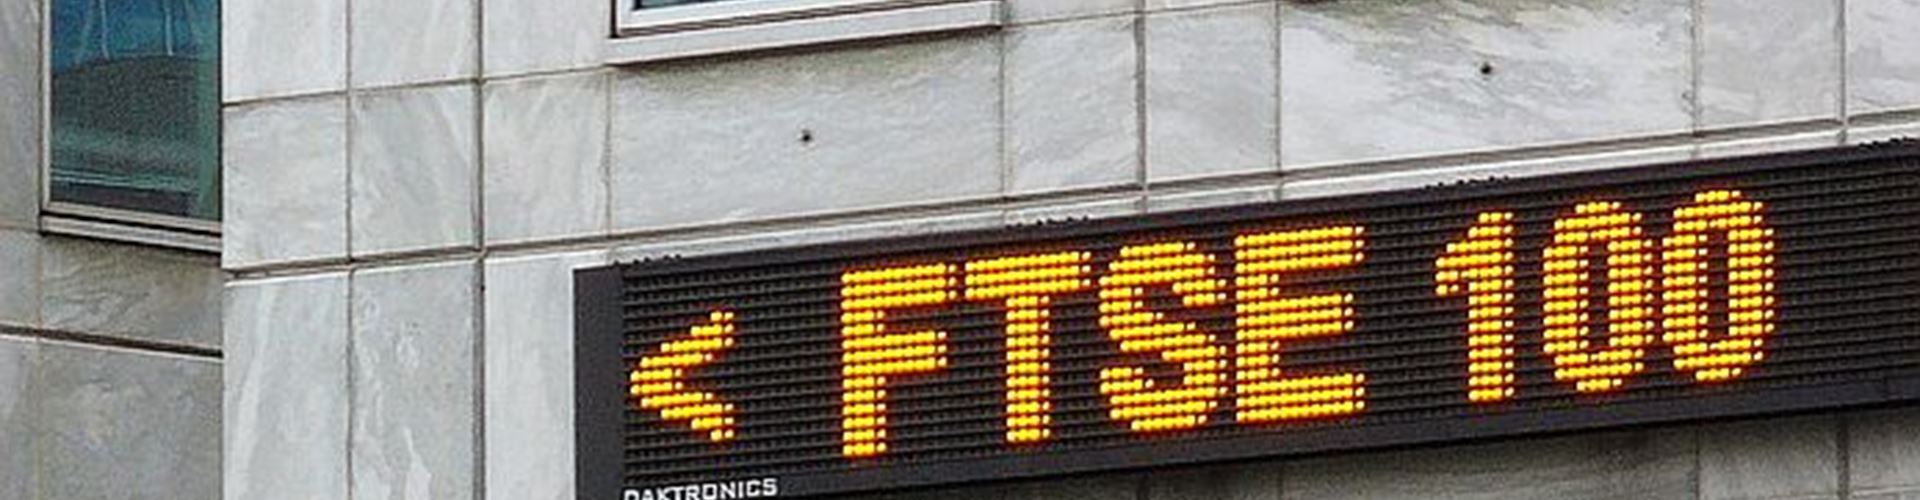 FTSE 100 sets aside £1.7 billion for tax litigation